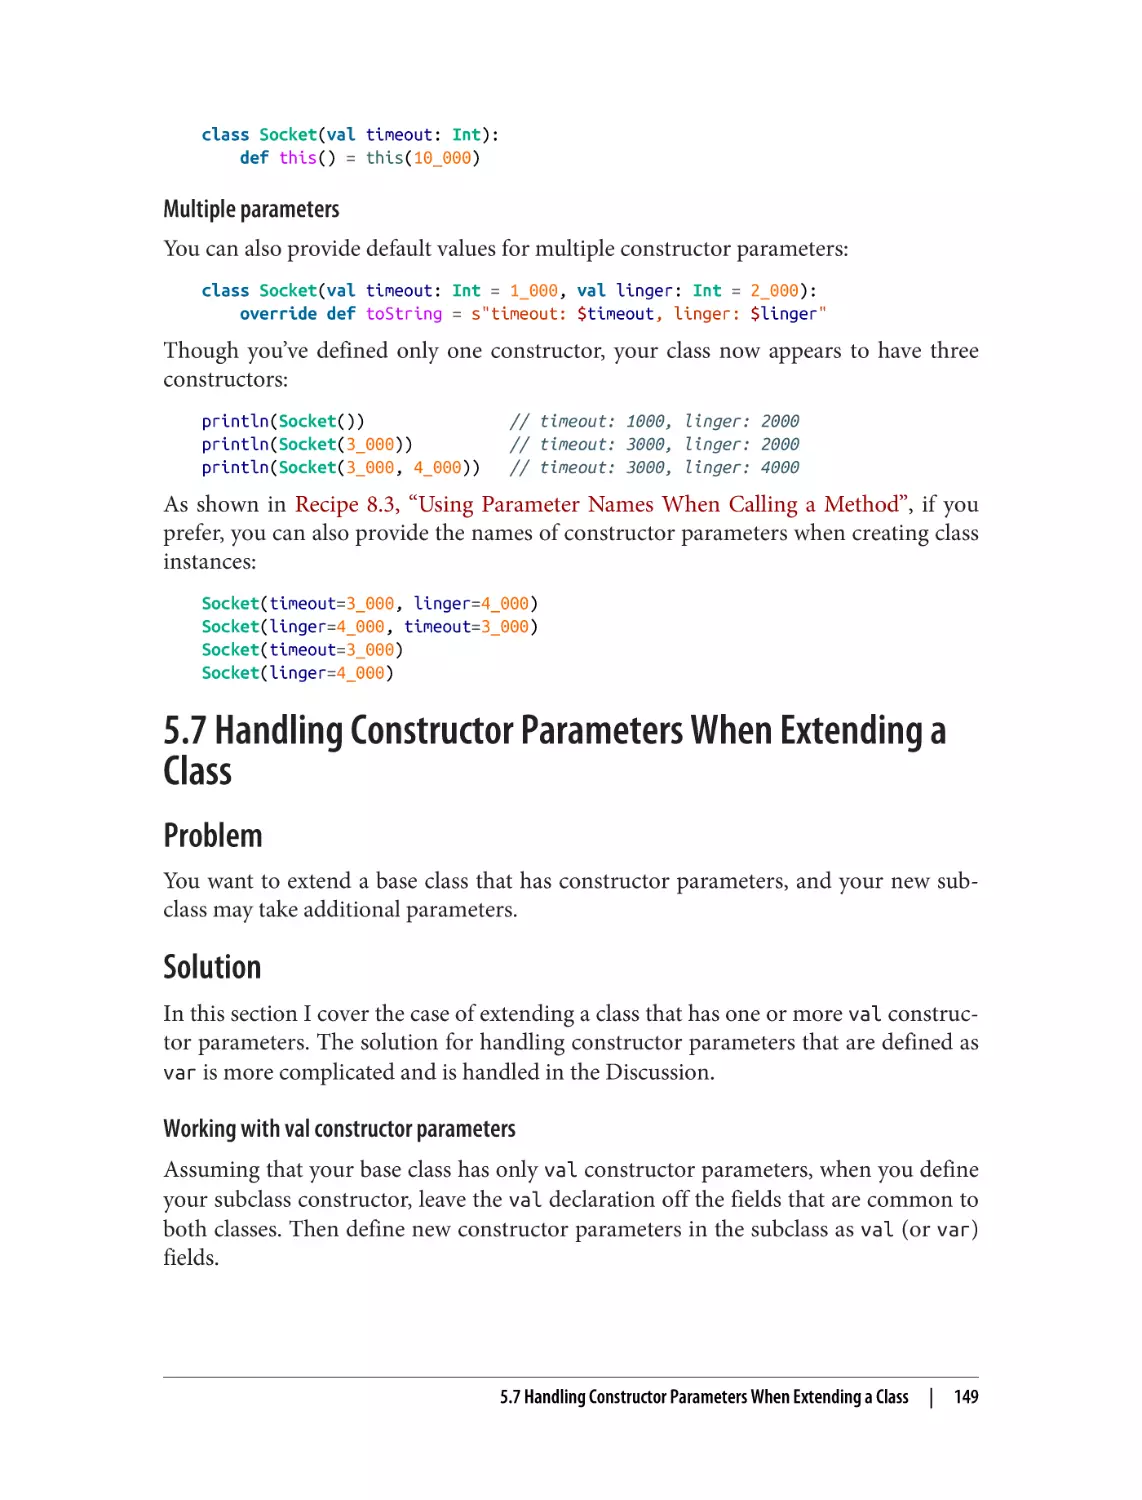 5.7 Handling Constructor Parameters When Extending a Class
Problem
Solution